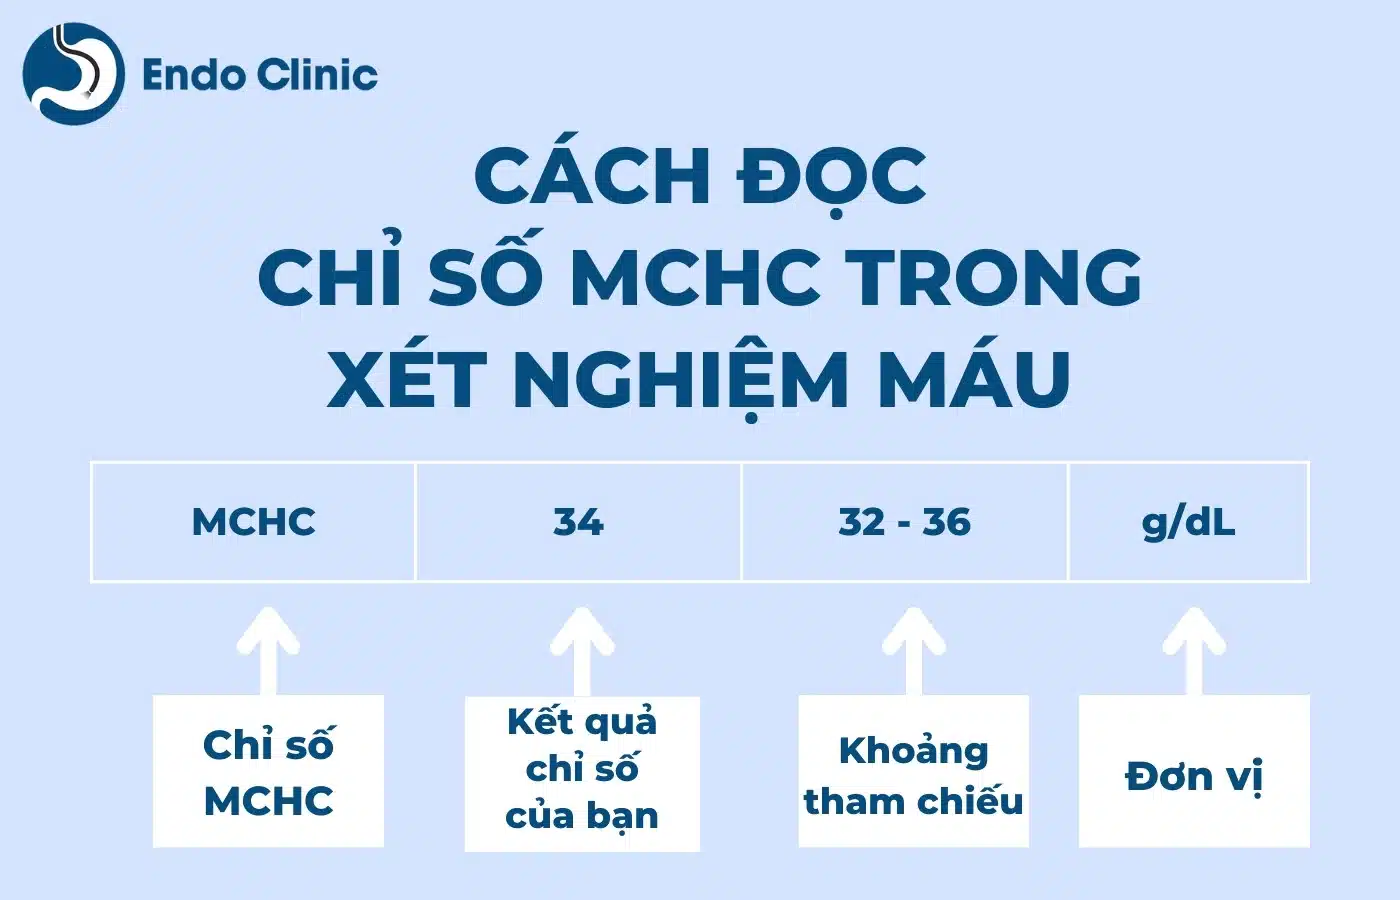 Cách hiểu chỉ số MCHC nhập xét nghiệm công thức ngày tiết như vậy nào?